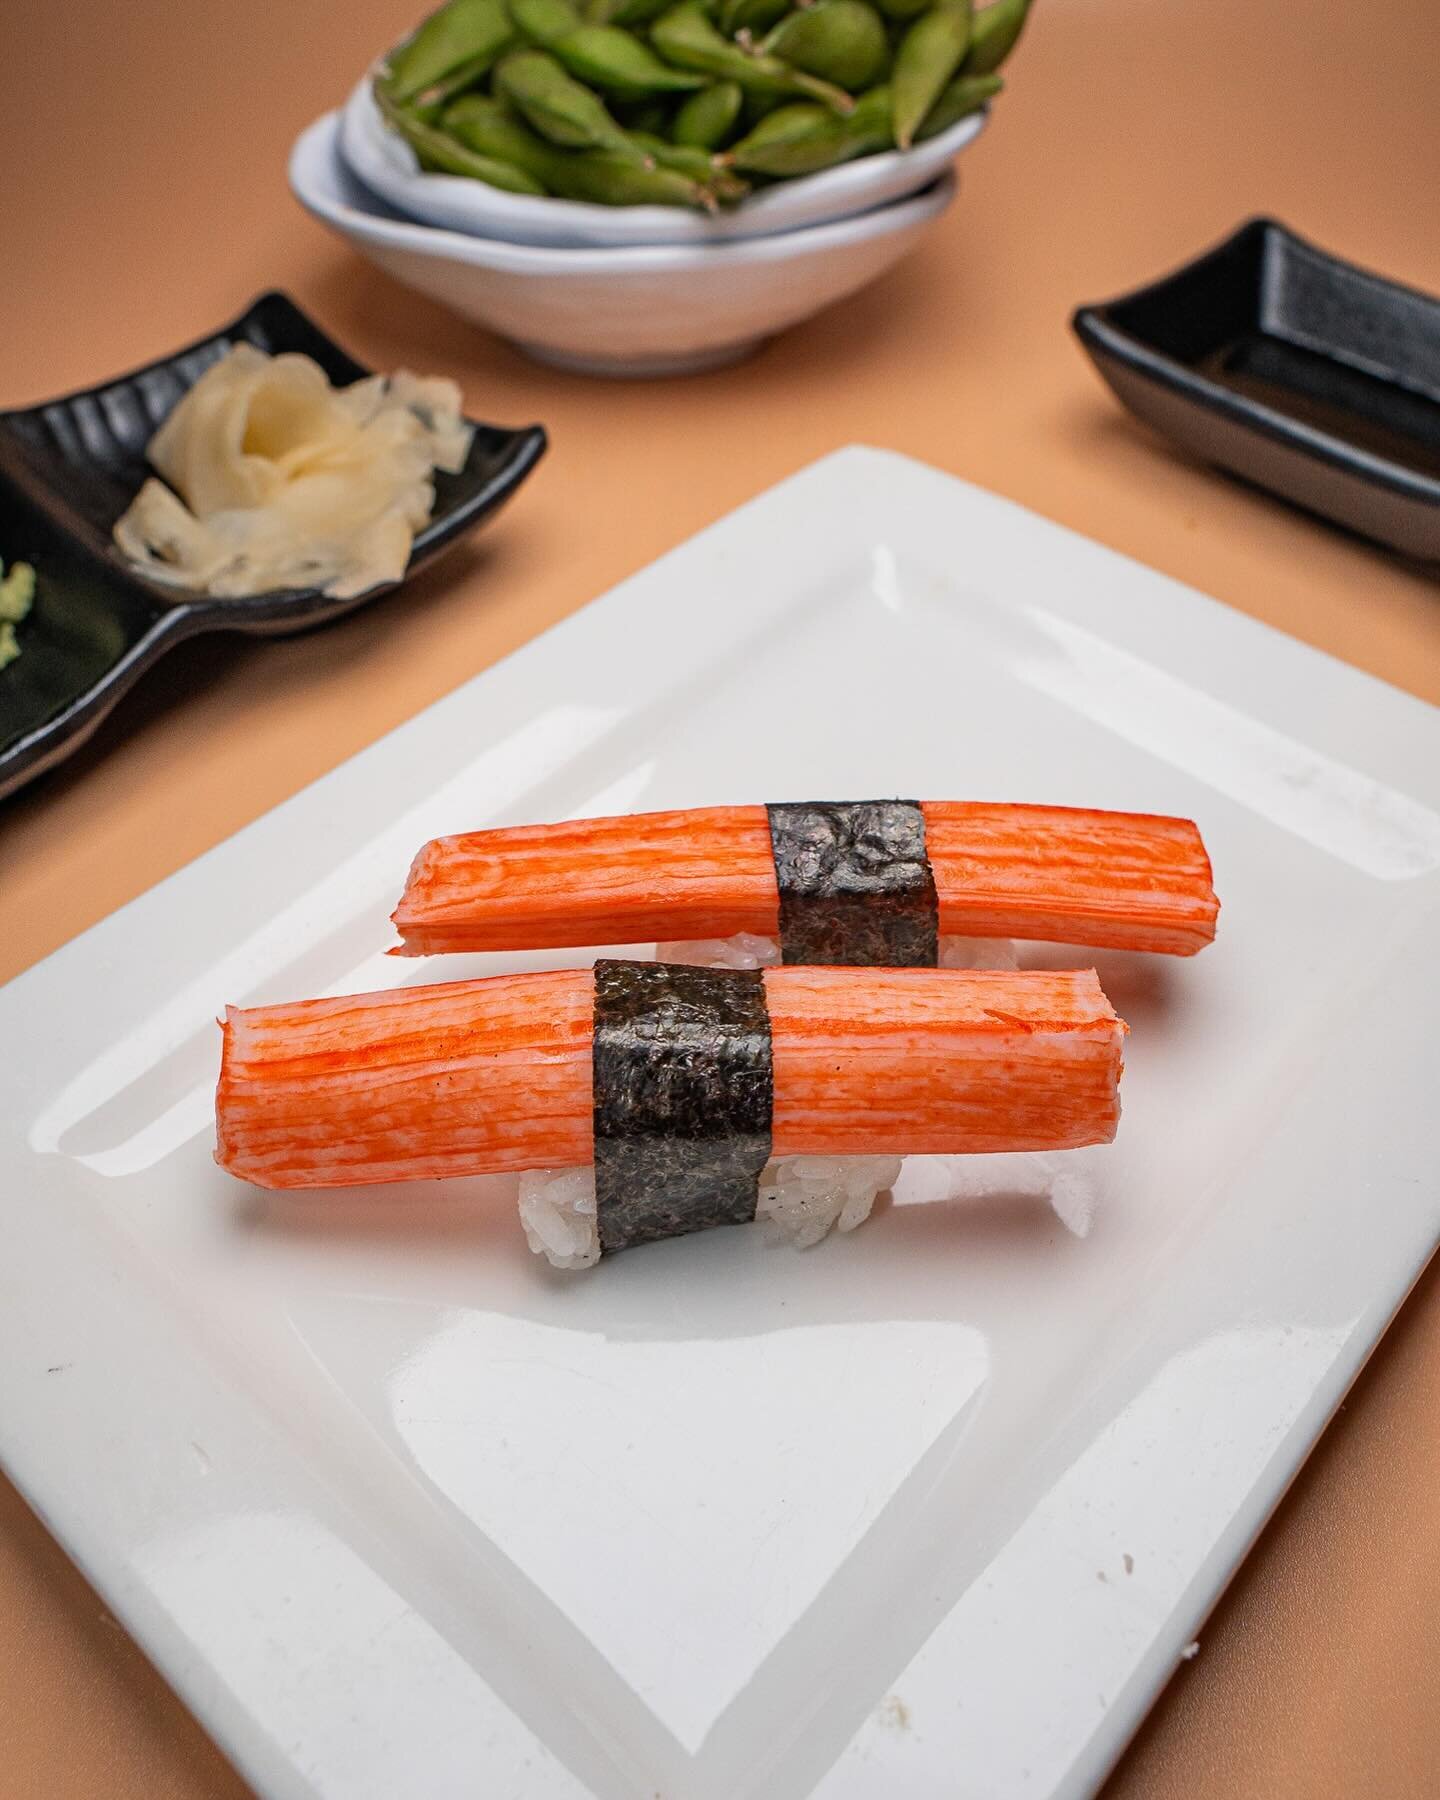 Let each bite of this Nigiri transport you to sushi heaven! Visit us today! #VegasEats 🍣😍 

◾◽◾◽◾◽◾◽◾◽
🍣 𝗔𝗬𝗖𝗘 𝗦𝗨𝗦𝗛𝗜 𝗠𝗢𝗡 𝗠𝗔𝗥𝗬𝗟𝗔𝗡𝗗
⏰ ᴅᴀɪʟʏ: 12:00 ᴘᴍ - 11:00 ᴘᴍ
⏰ ʟᴀꜱᴛ ꜱᴇᴀᴛɪɴɢ ꜰᴏʀ ᴀʏᴄᴇ 10ᴘᴍ
⏰ ʟᴀꜱᴛᴏʀᴅᴇʀ10:30ᴘᴍ 
📍 9770 ꜱ ᴍᴀʀʏʟᴀɴᴅ ᴘ